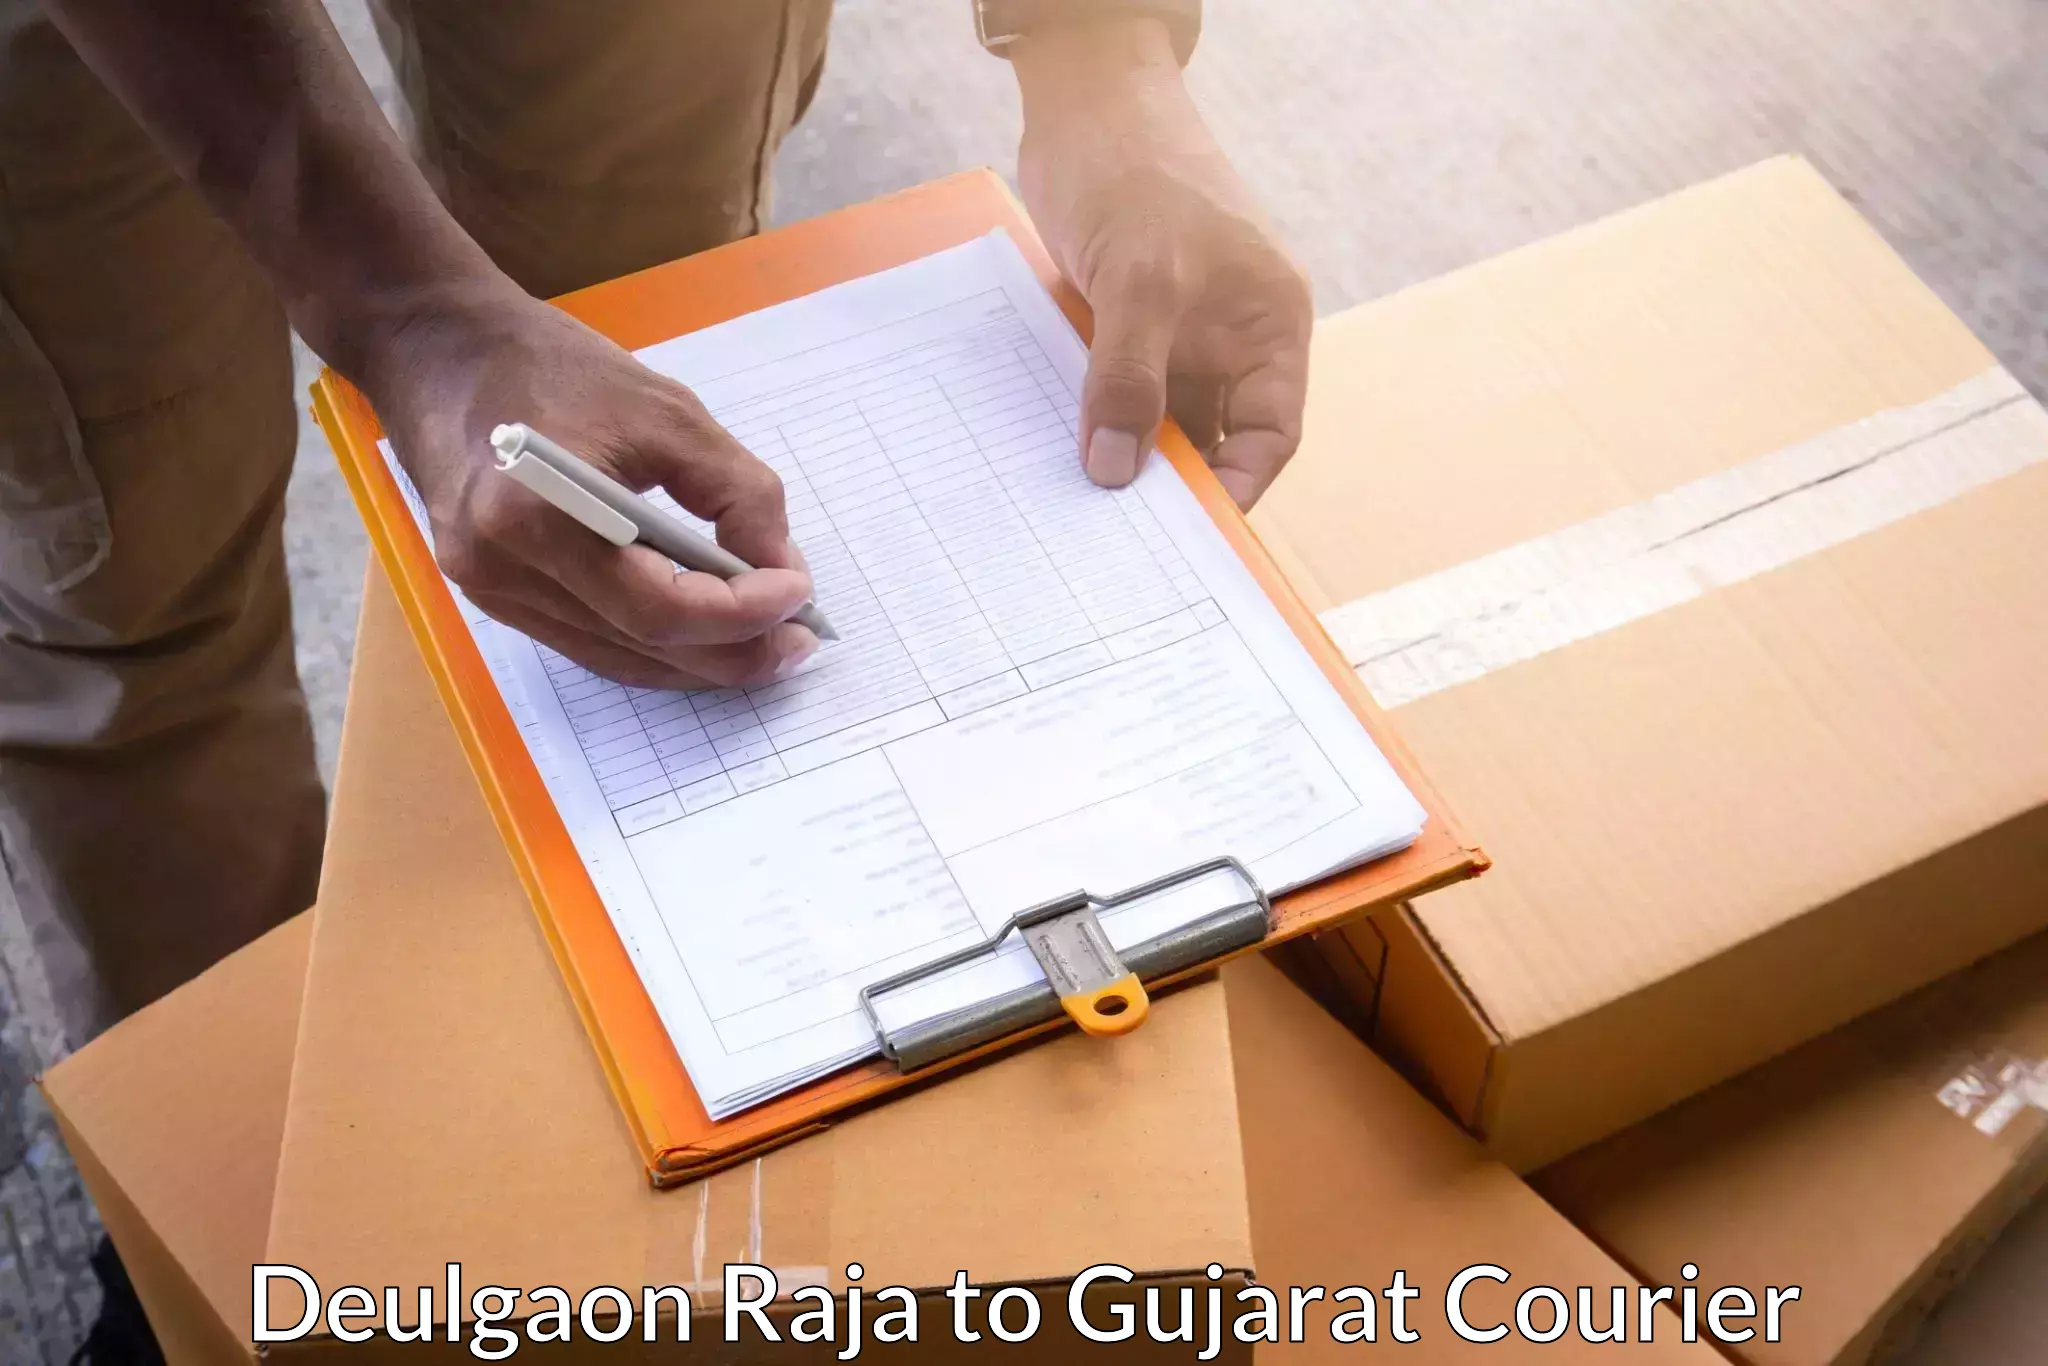 Courier service comparison Deulgaon Raja to Gandhidham